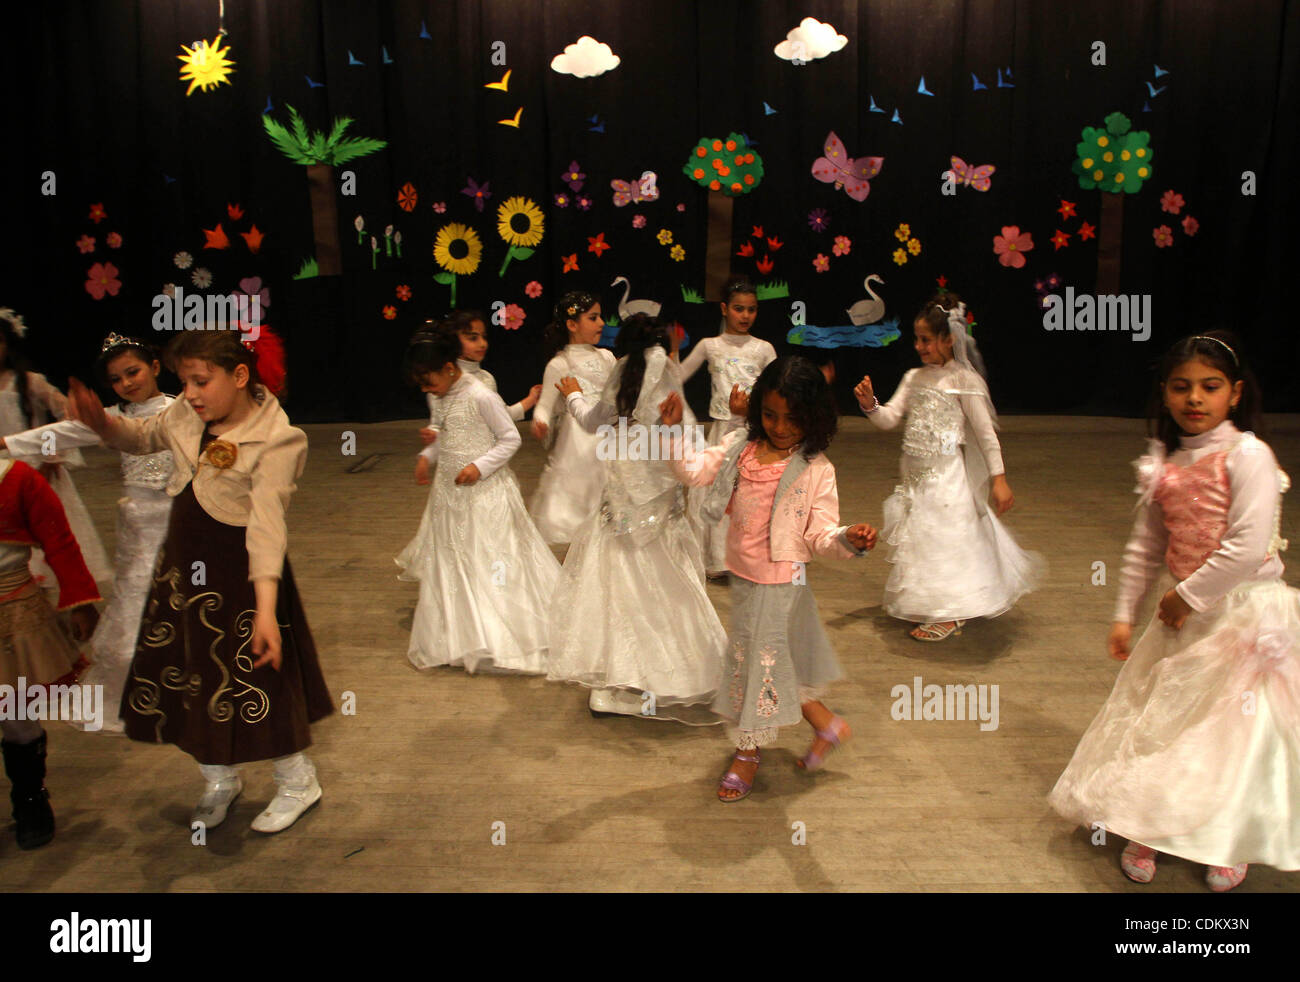 Palästinensische Kinder tanzen während einer unterhaltsamen Feier organisiert von UNRWA im Shawwa Theatre in Gaza-Stadt am März 28,2011... Foto von Ashraf Amra Stockfoto